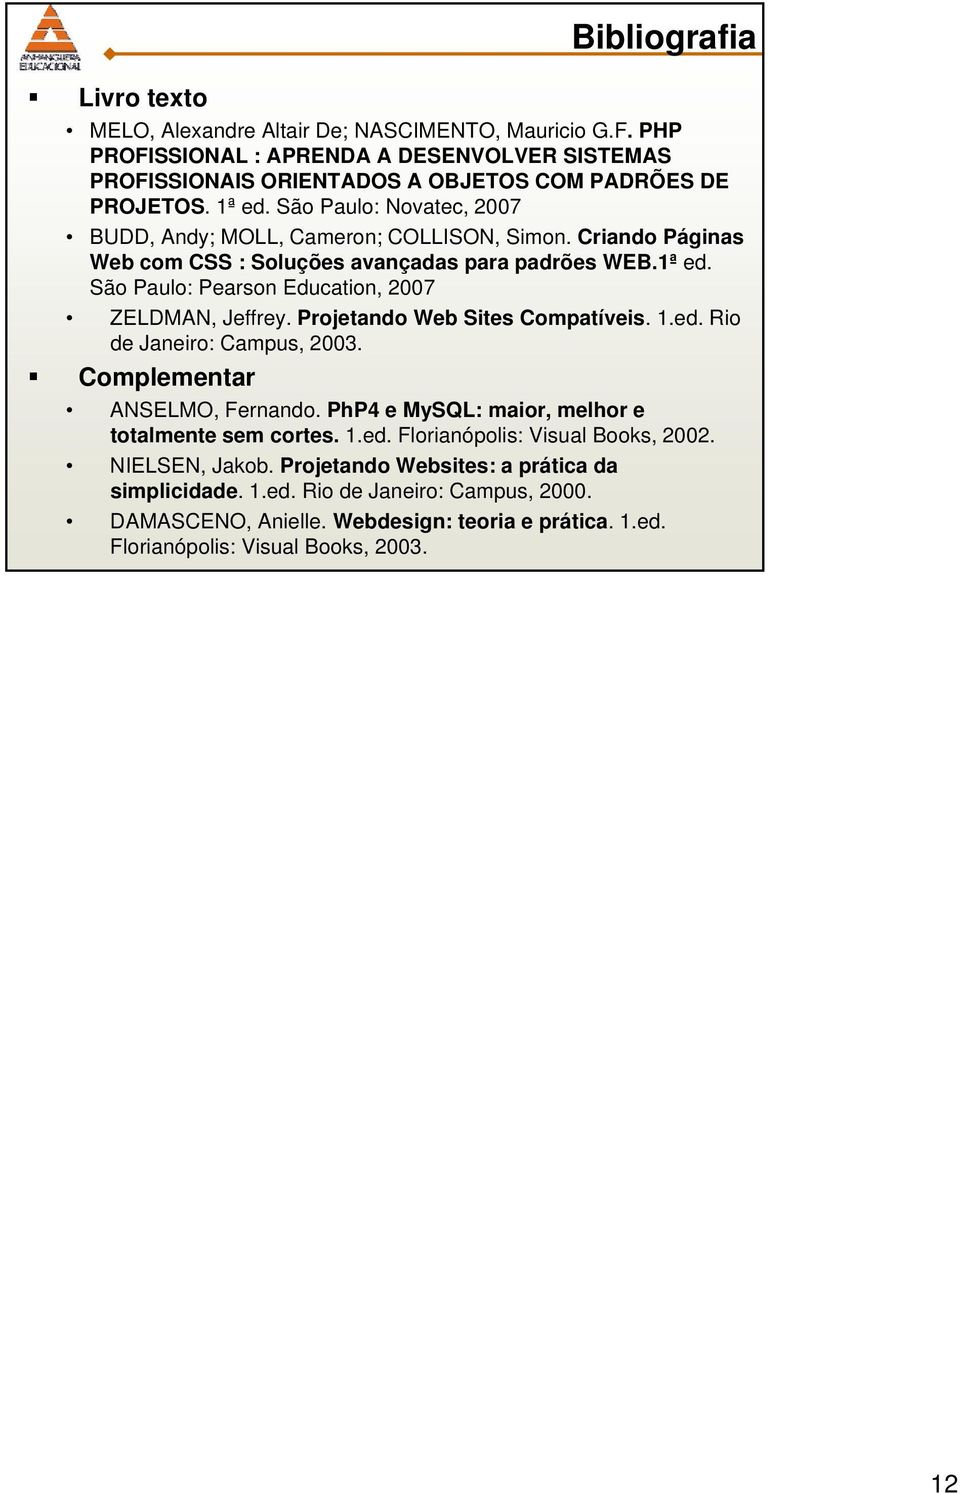 Projetando Web Sites Compatíveis. 1.ed. Rio de Janeiro: Campus, 2003. Complementar ANSELMO, Fernando. PhP4 e MySQL: maior, melhor e totalmente sem cortes. 1.ed. Florianópolis: Visual Books, 2002.